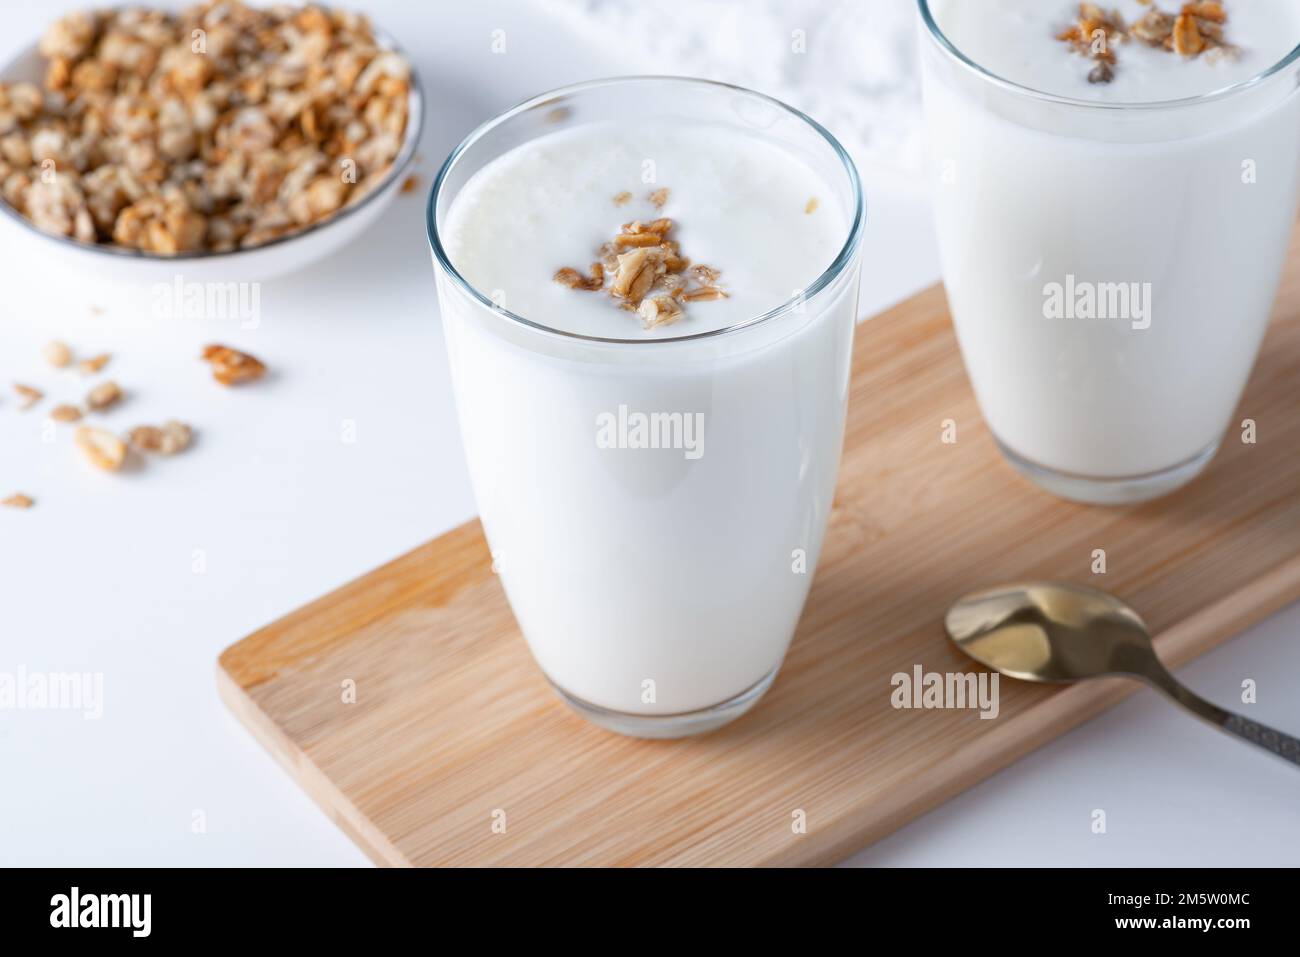 Kéfir, babeurre ou yaourt avec granola. Boisson laitière fermentée froide probiotique. Banque D'Images